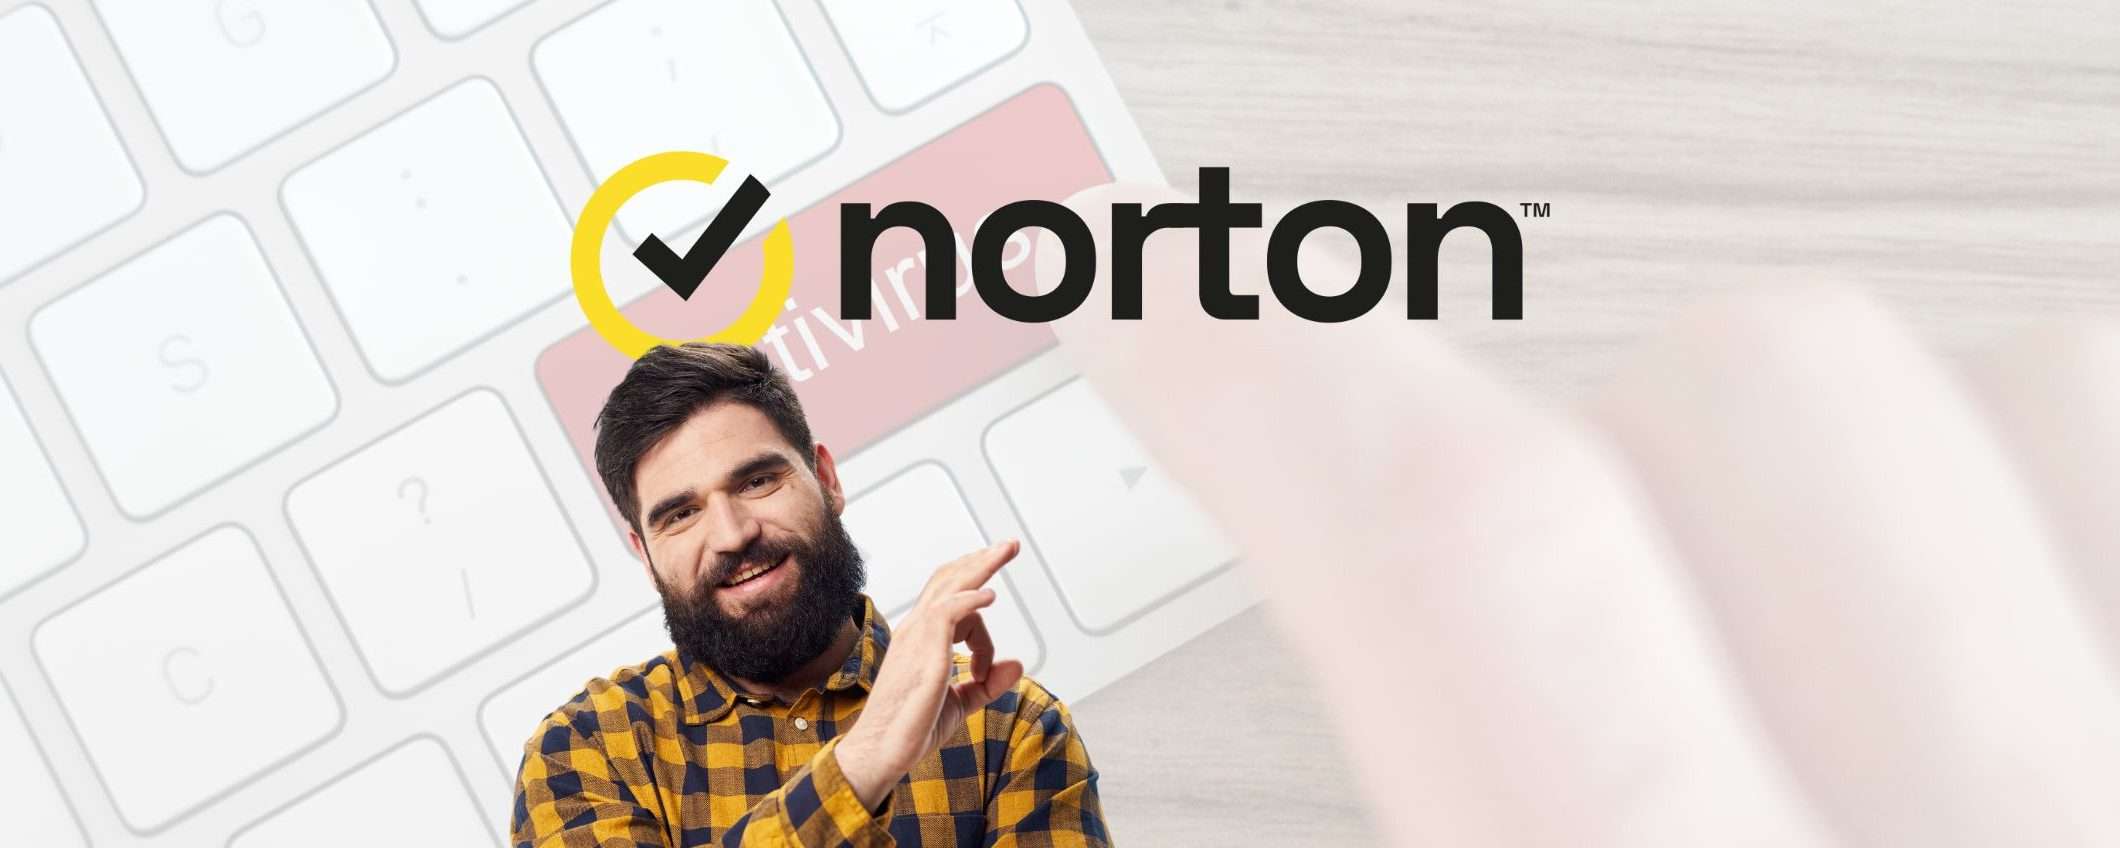 Norton 360 Premium: sicurezza totale al 60% di sconto